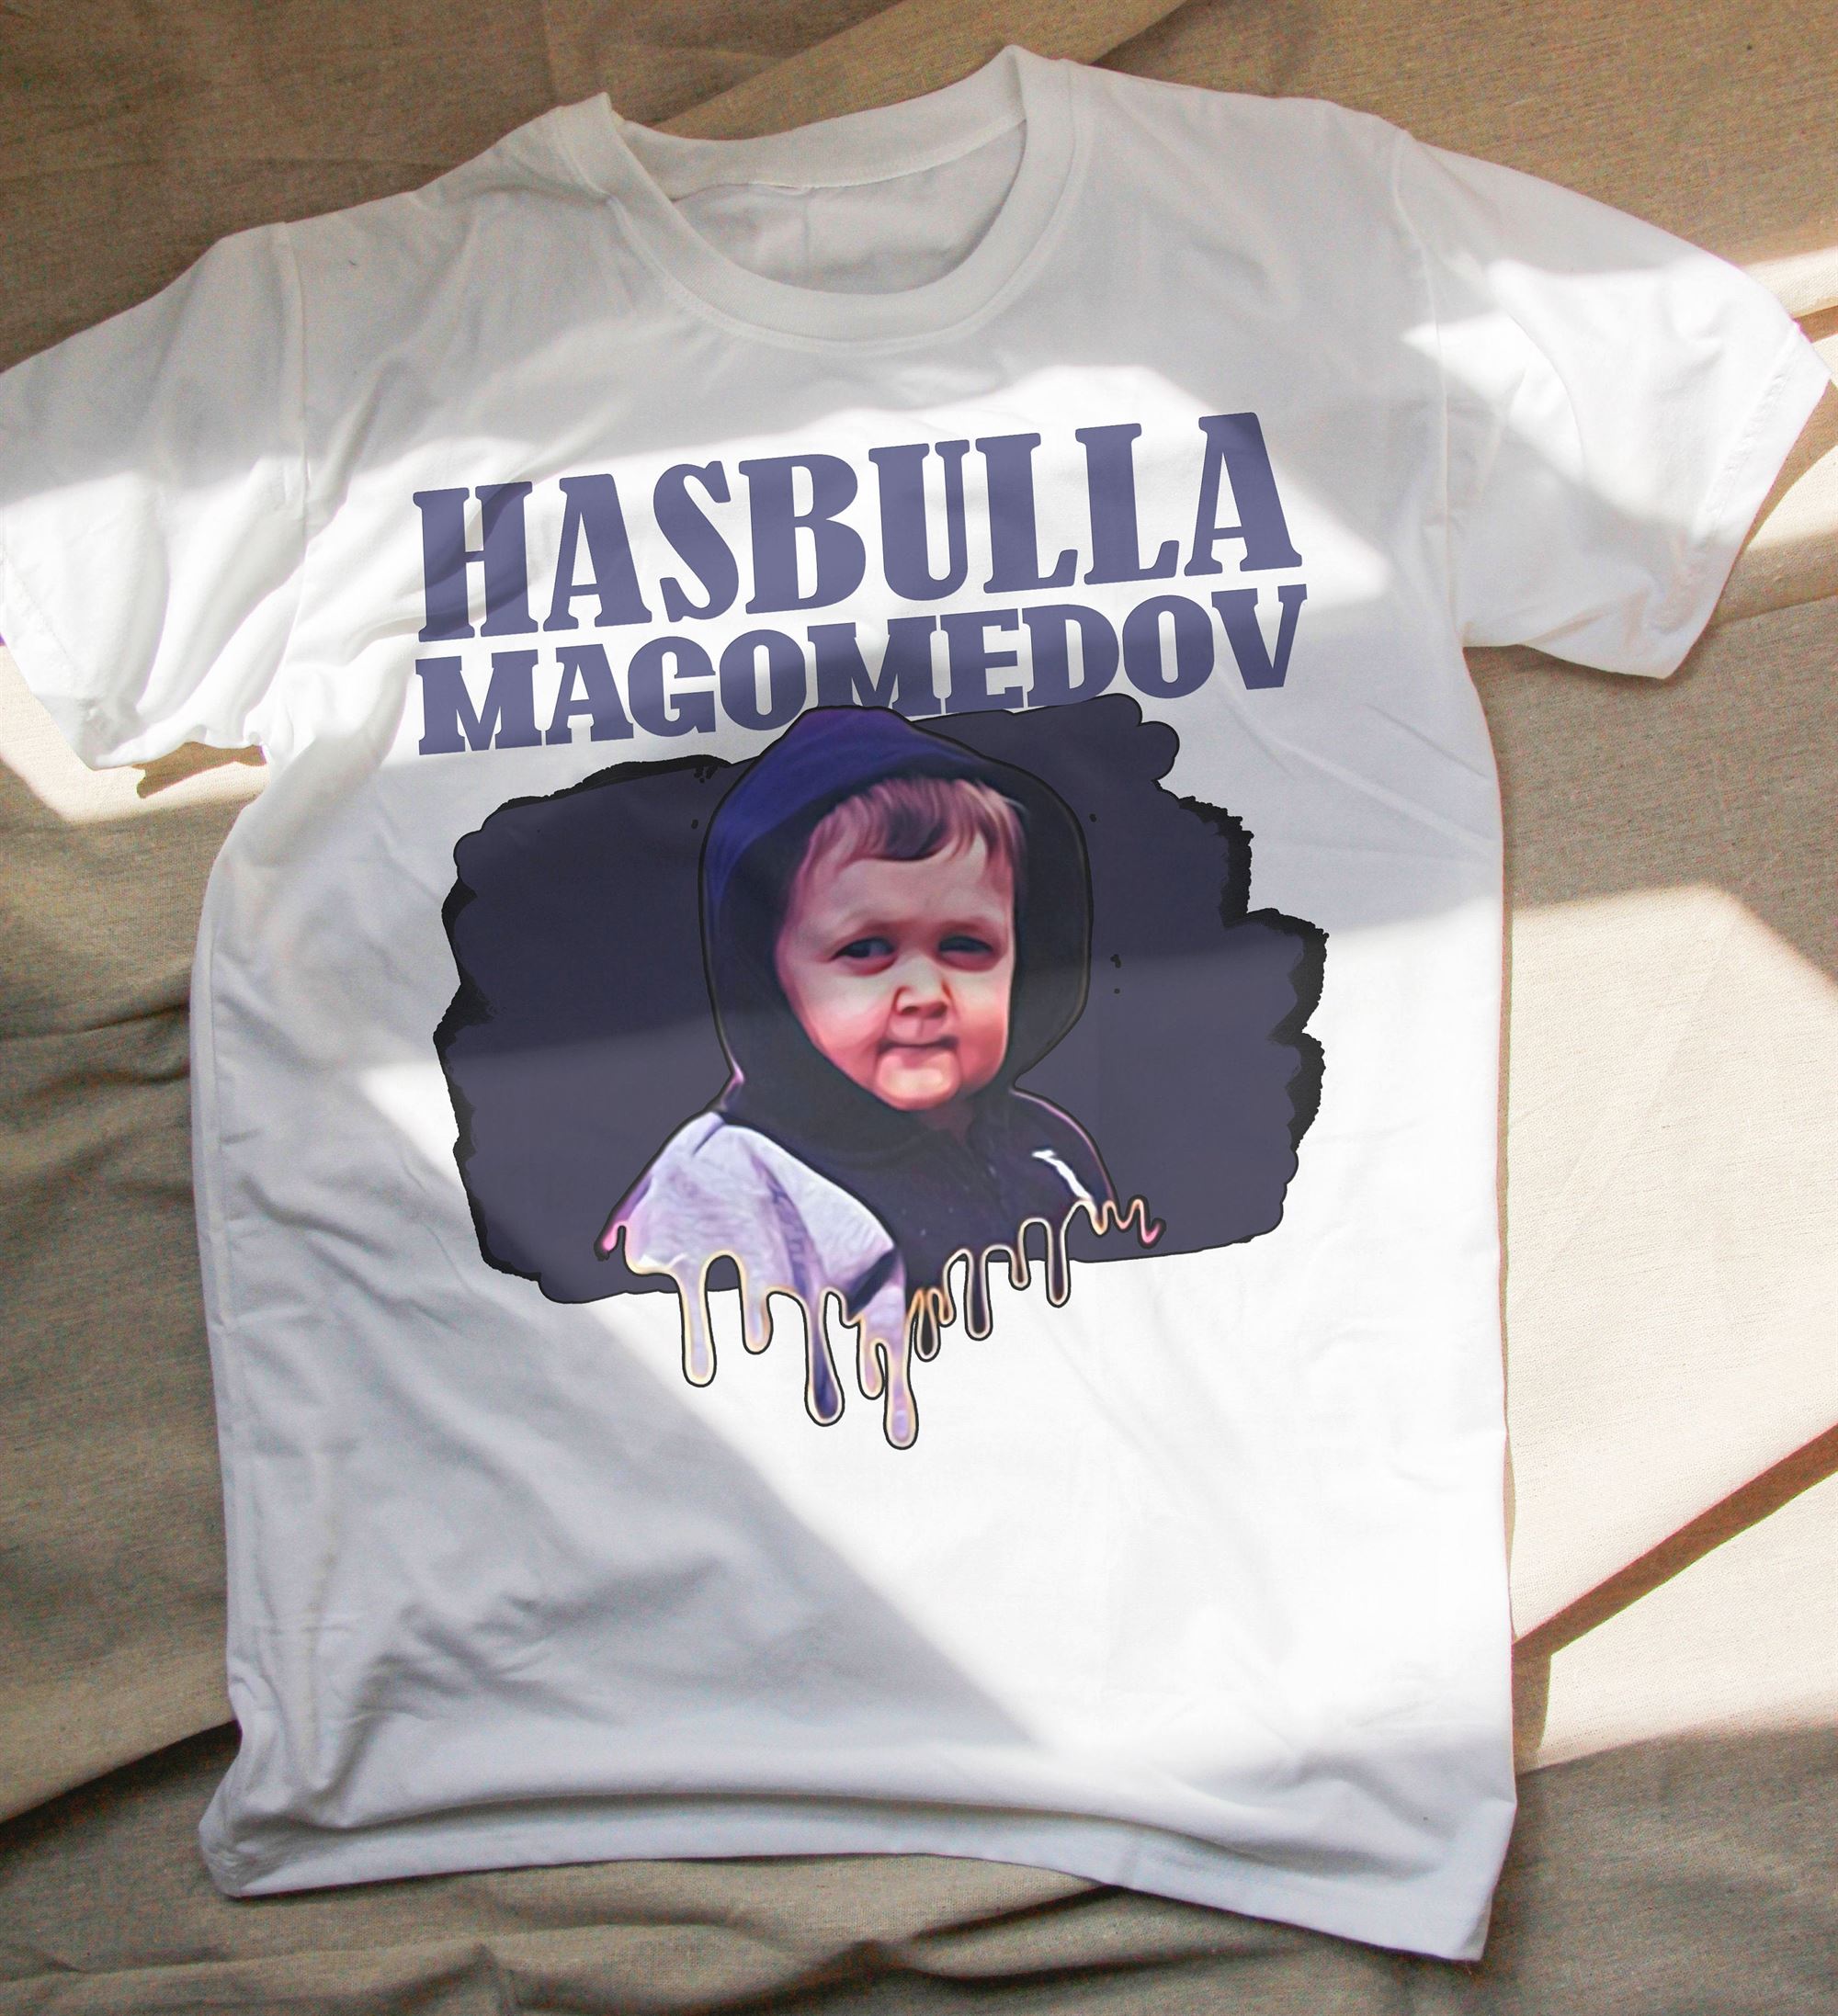 Hasbulla Magomedov T-shirt Mini Khabib Shirt Hasbulla Magomedov Mini Khabib Meme Shirt